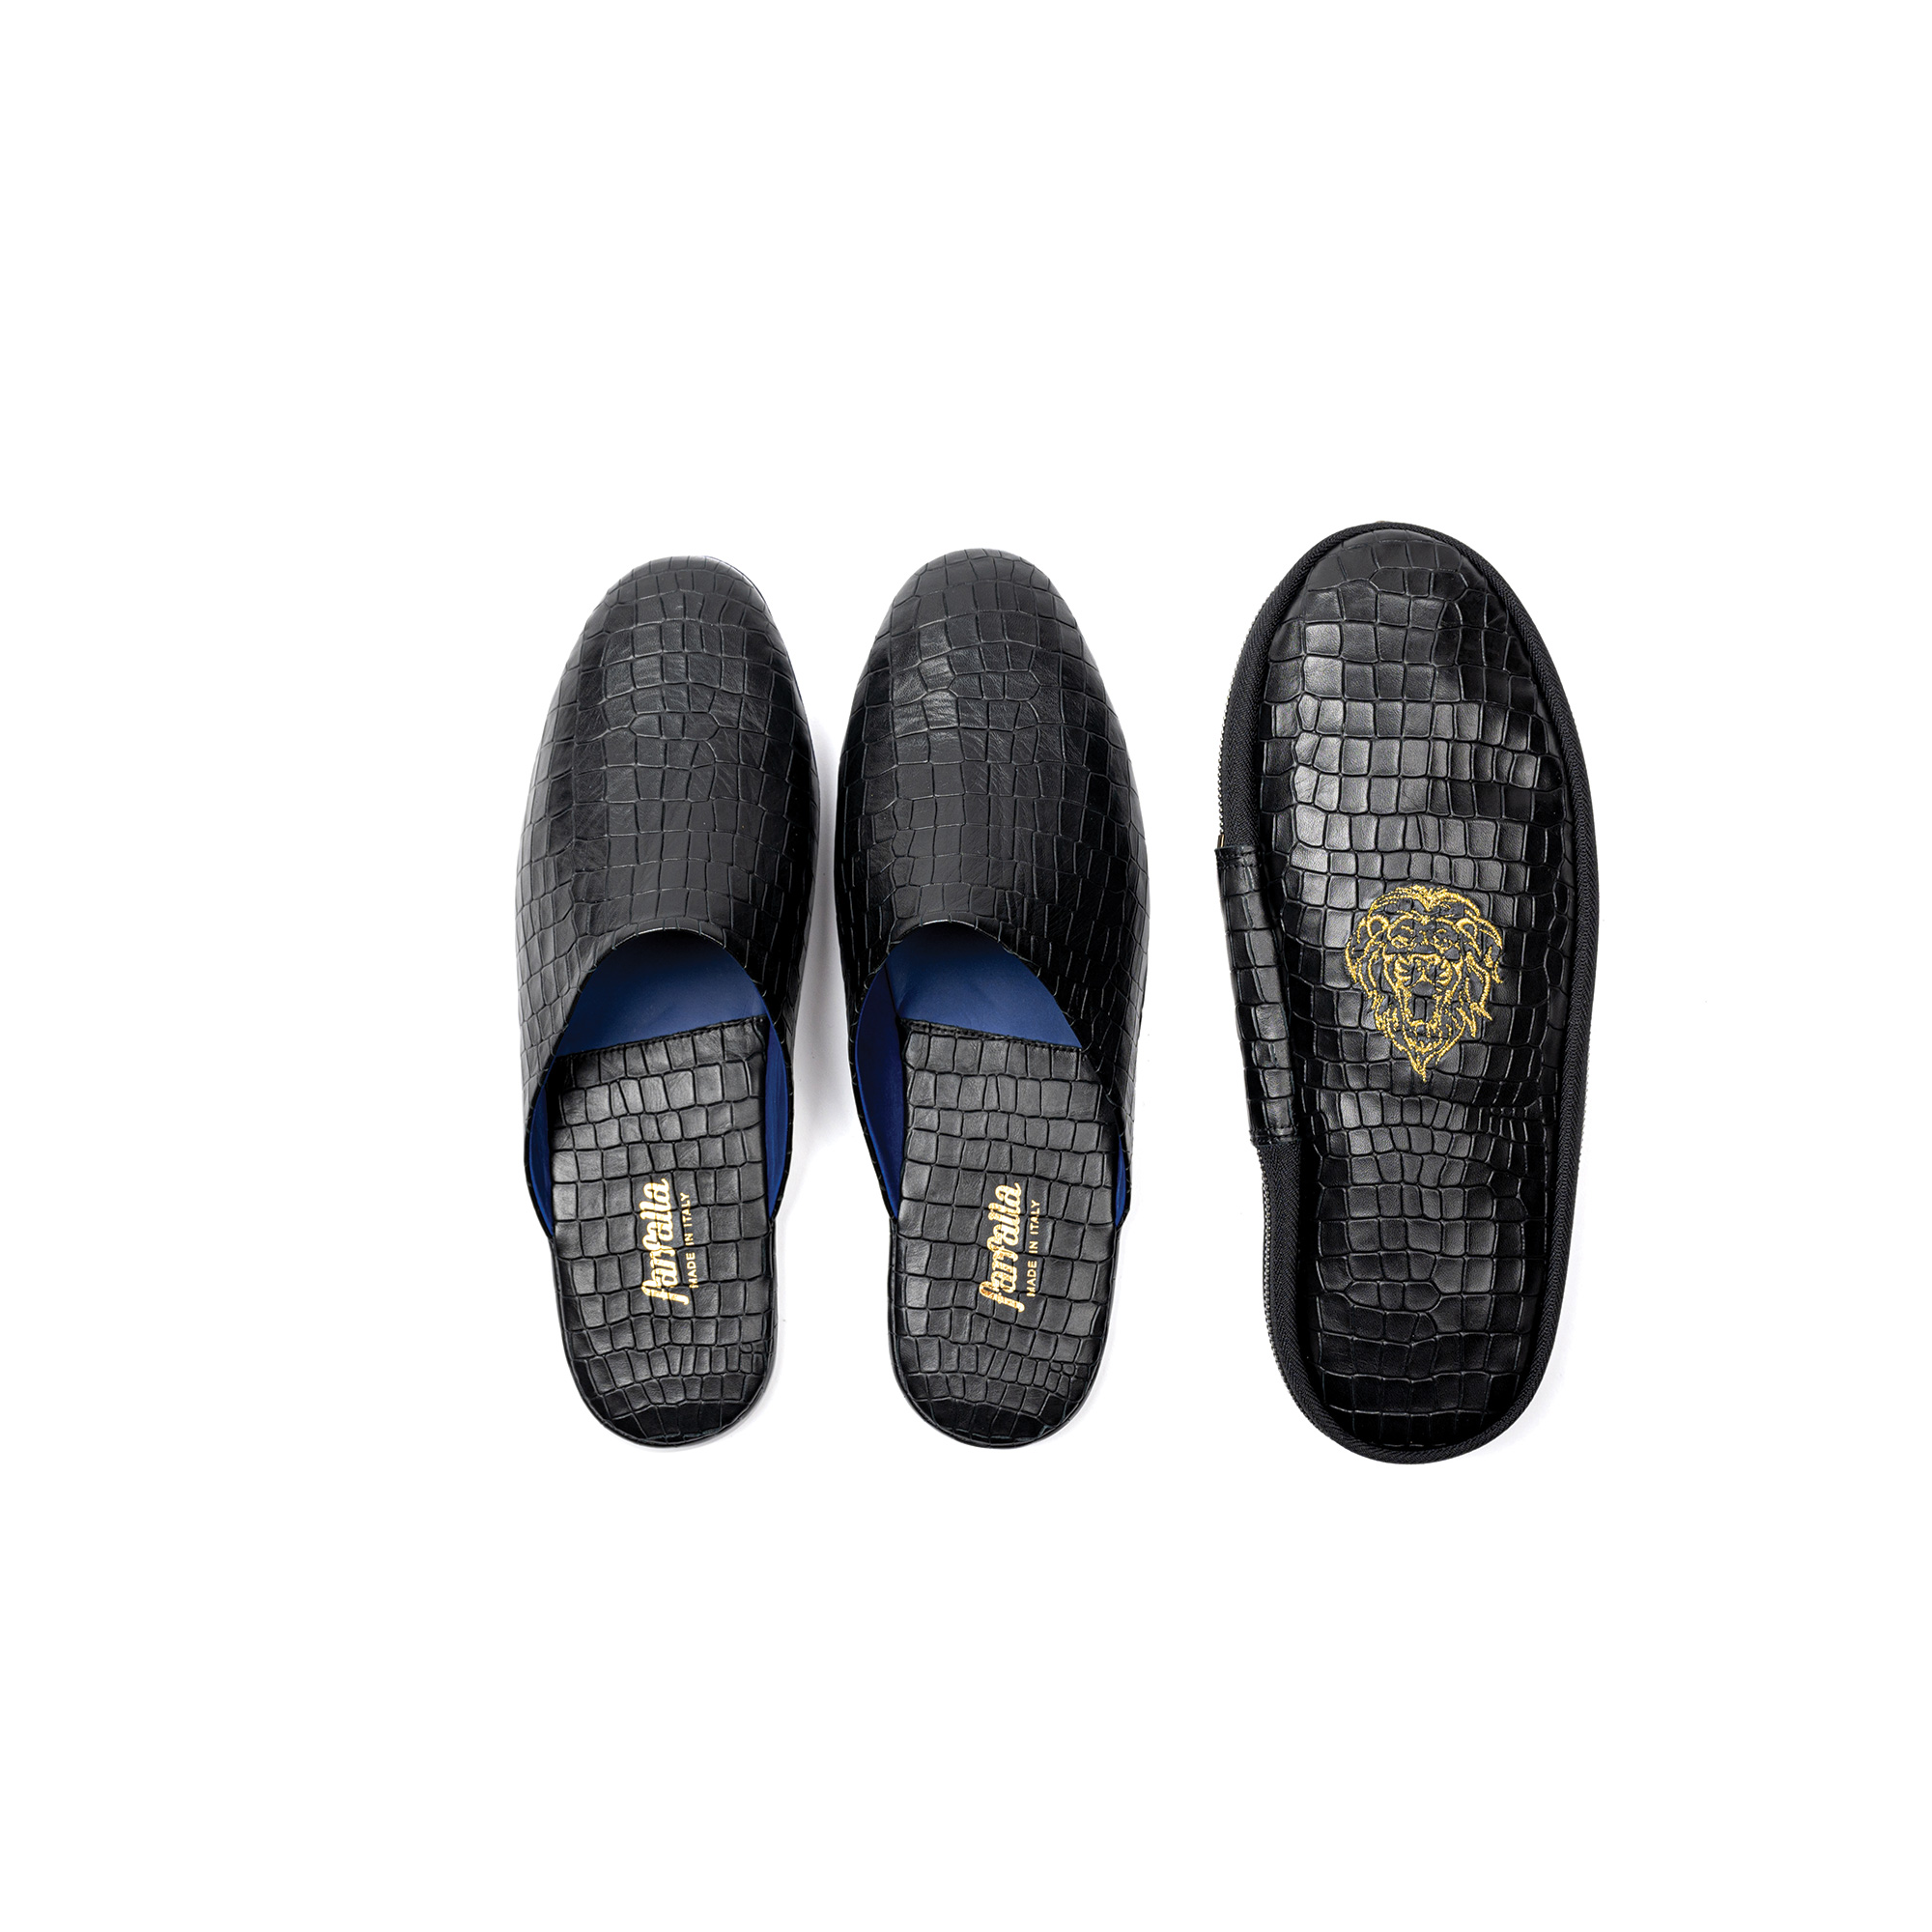 Pantofola interno lusso aperta in pelle stampato cocco - Farfalla italian slippers